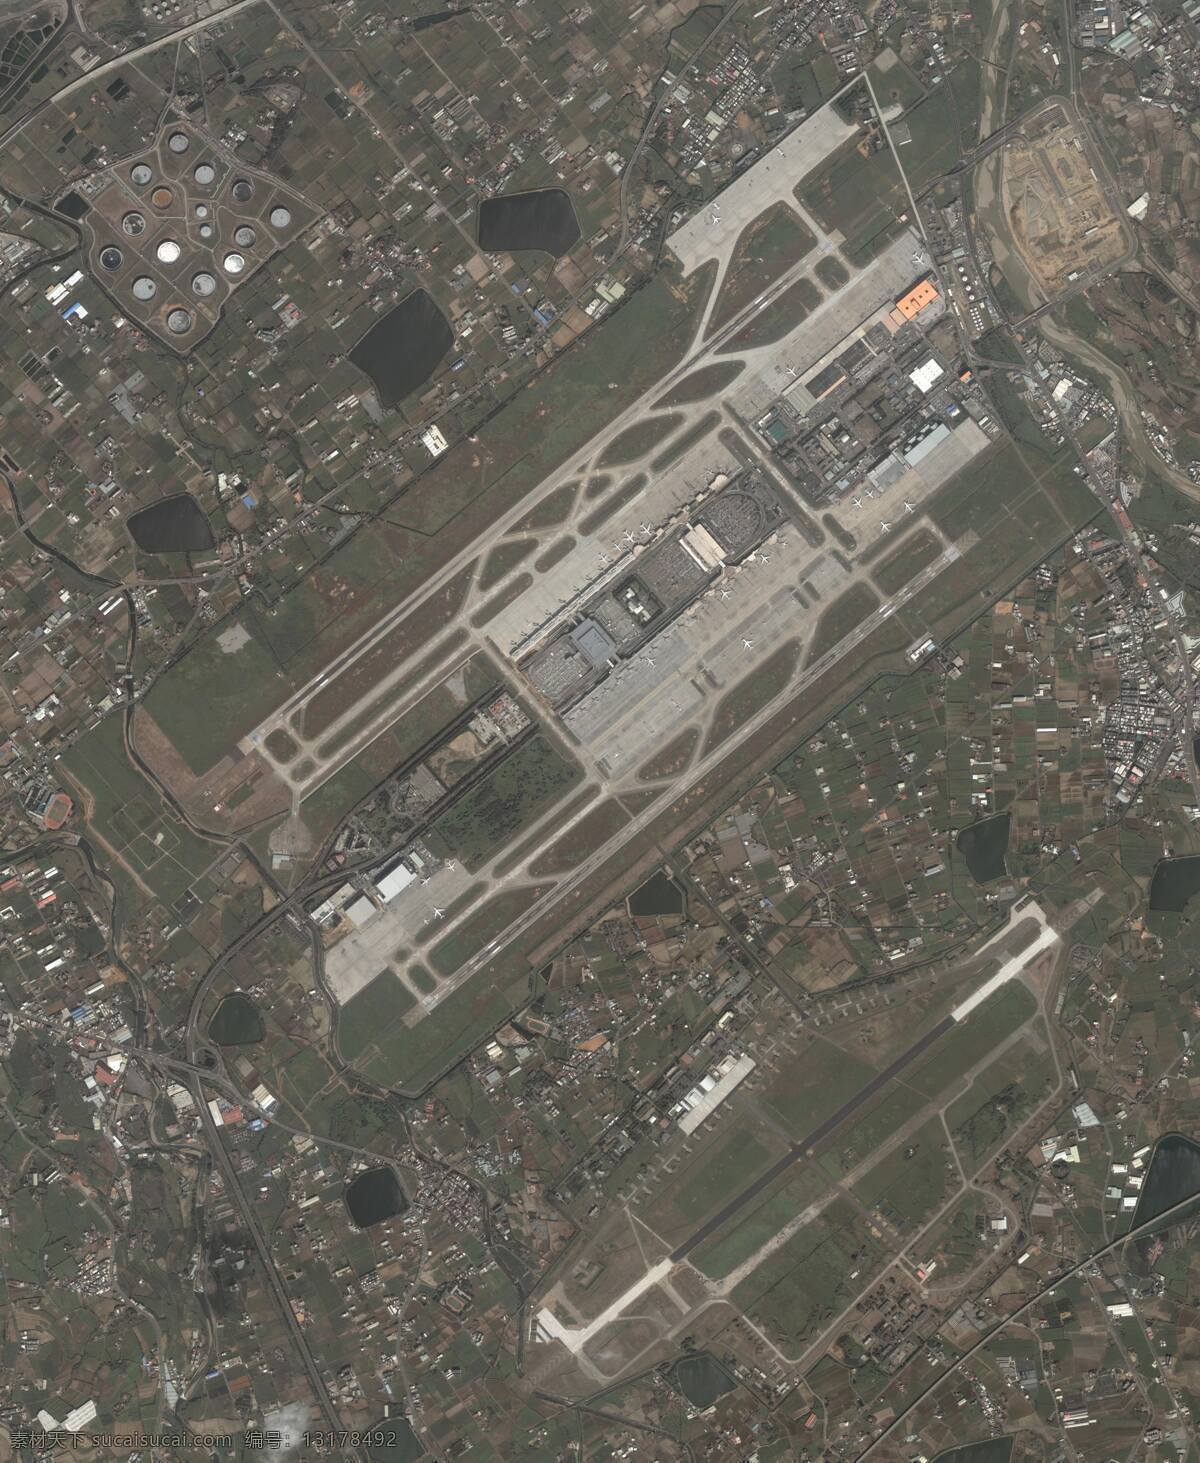 机场 机场跑道 机场航拍图 机场卫星图 机场全景图 机场航站楼 3号航站楼 波音747 超 清晰 卫星 照片 军事武器 现代科技